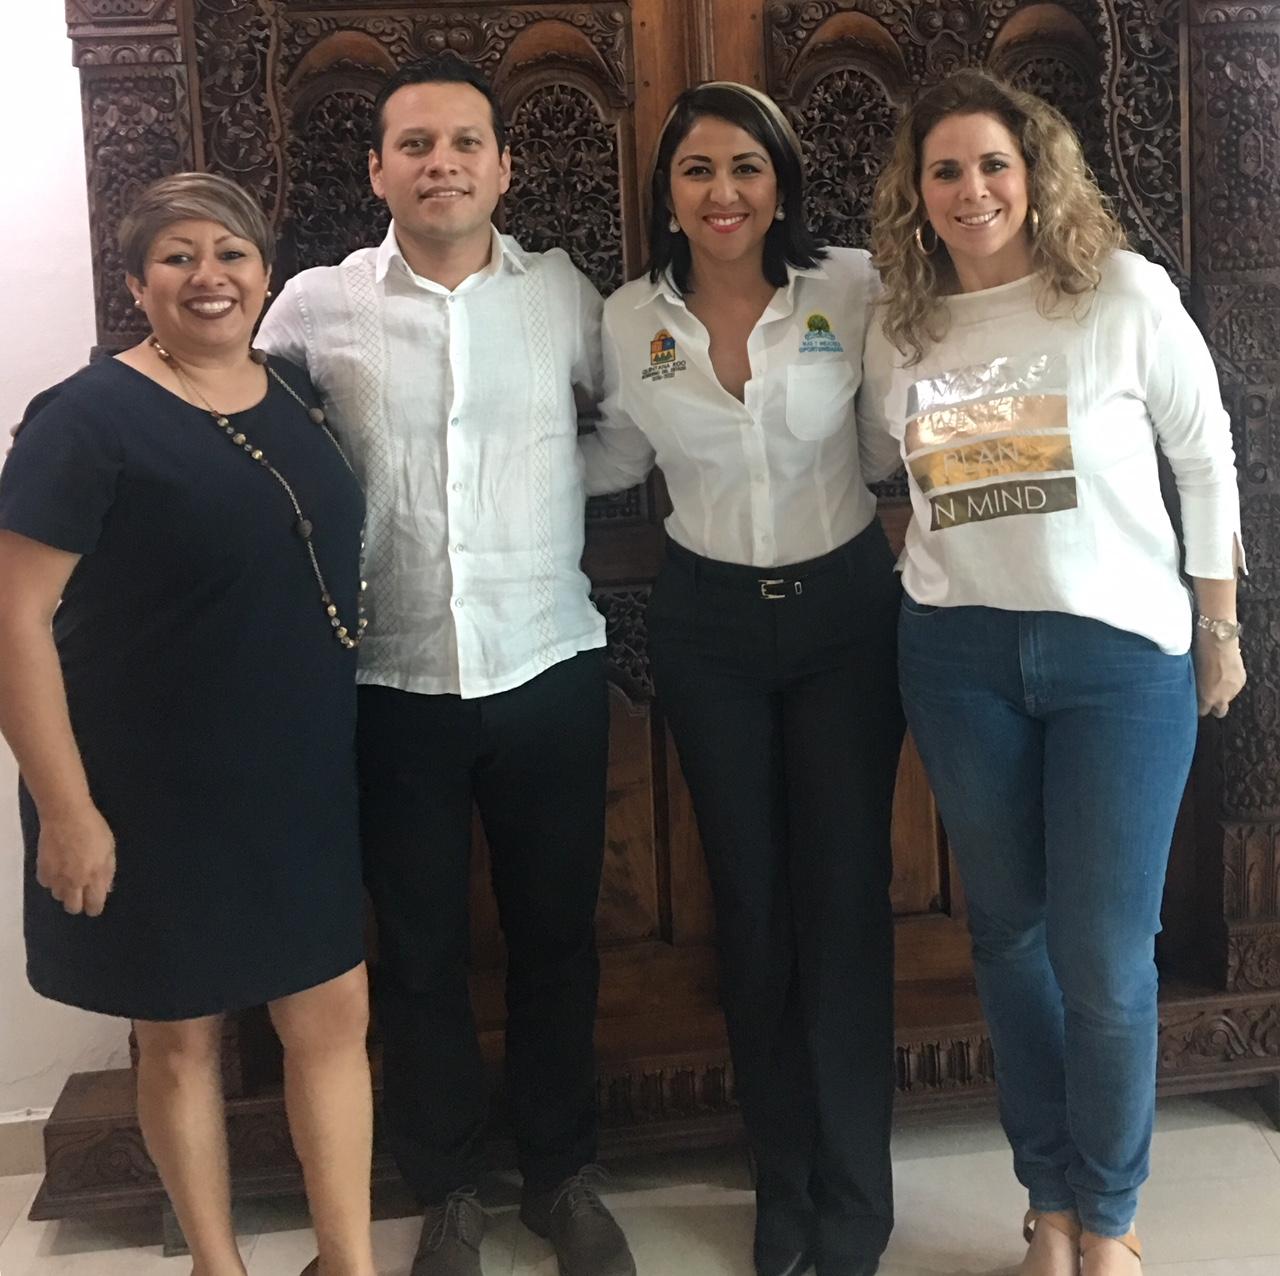 El 21 de febrero 2018, la delegada de la Junta de Asistencia Social, la Lic. Liliana Rodríguez acudió a la reunión mensual convocada por las instituciones de asistencia privada y asociaciones civiles pertenecientes a “Colectivo para el impacto social”.